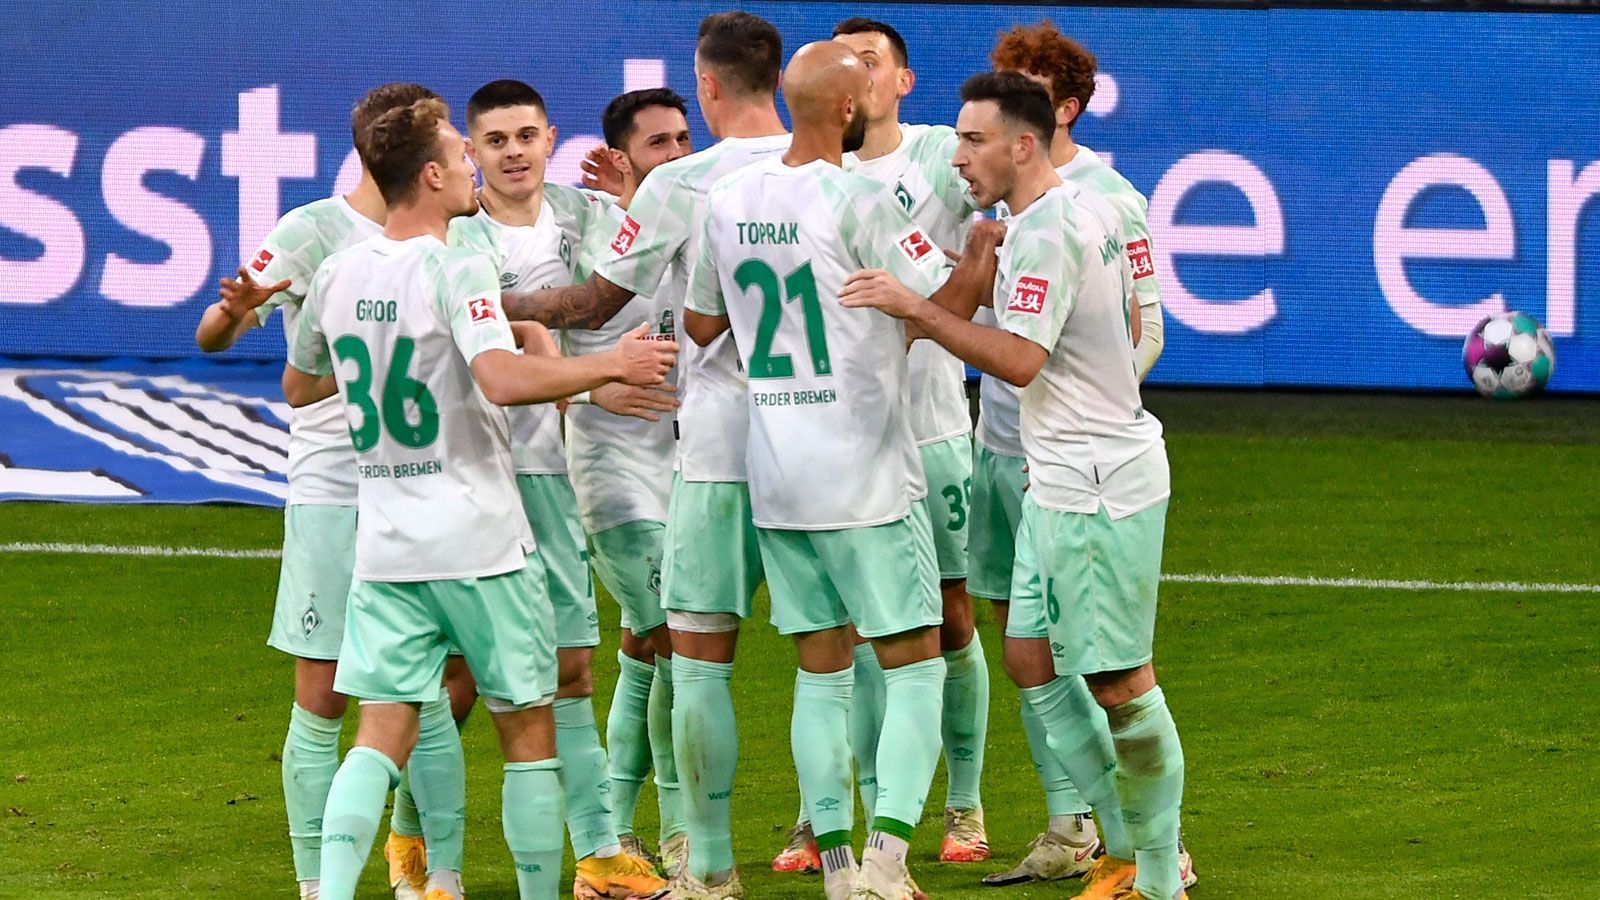 
                <strong>Platz 12: SV Werder Bremen</strong><br>
                Medienerlöse 2020/21: 55,92 Millionen Euro -Davon 52,9 Mio. national und 3,02 Mio. international.
              